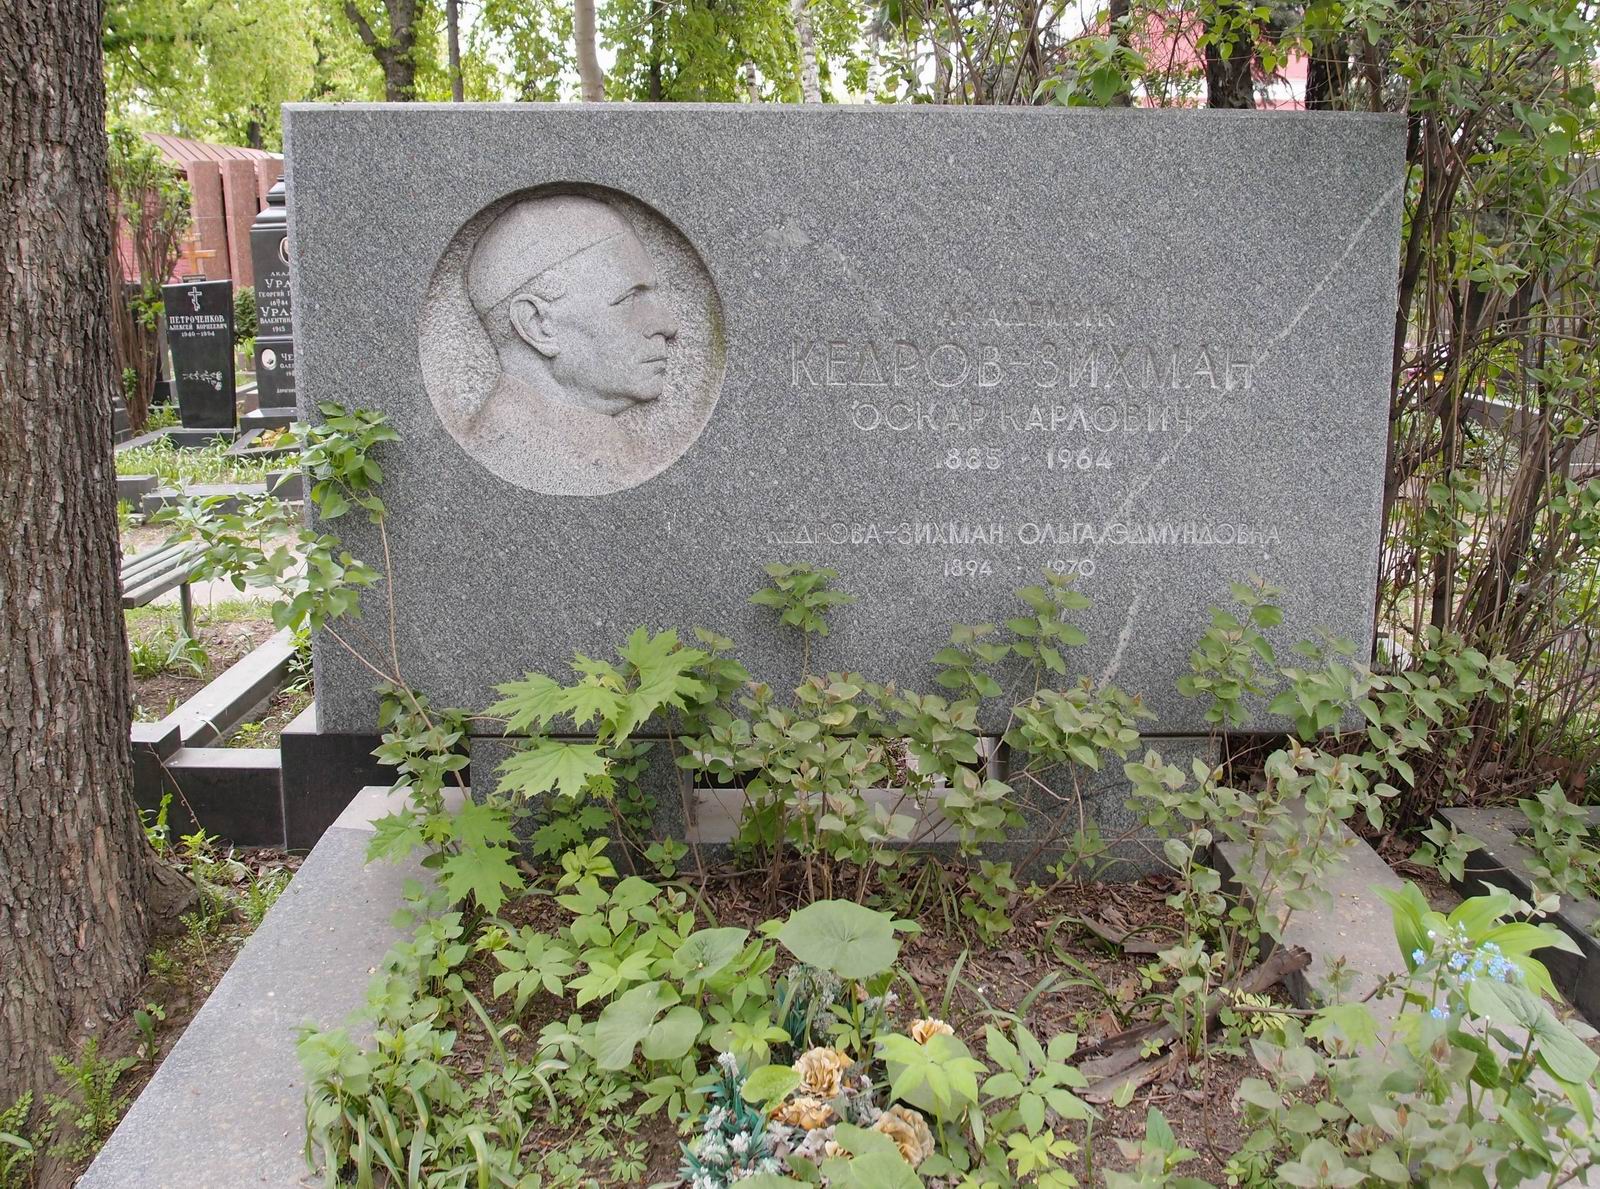 Памятник на могиле Кедрова-Зихмана О.К. (1885-1964), арх. Н.Саркисов, на Новодевичьем кладбище (5-8-3).